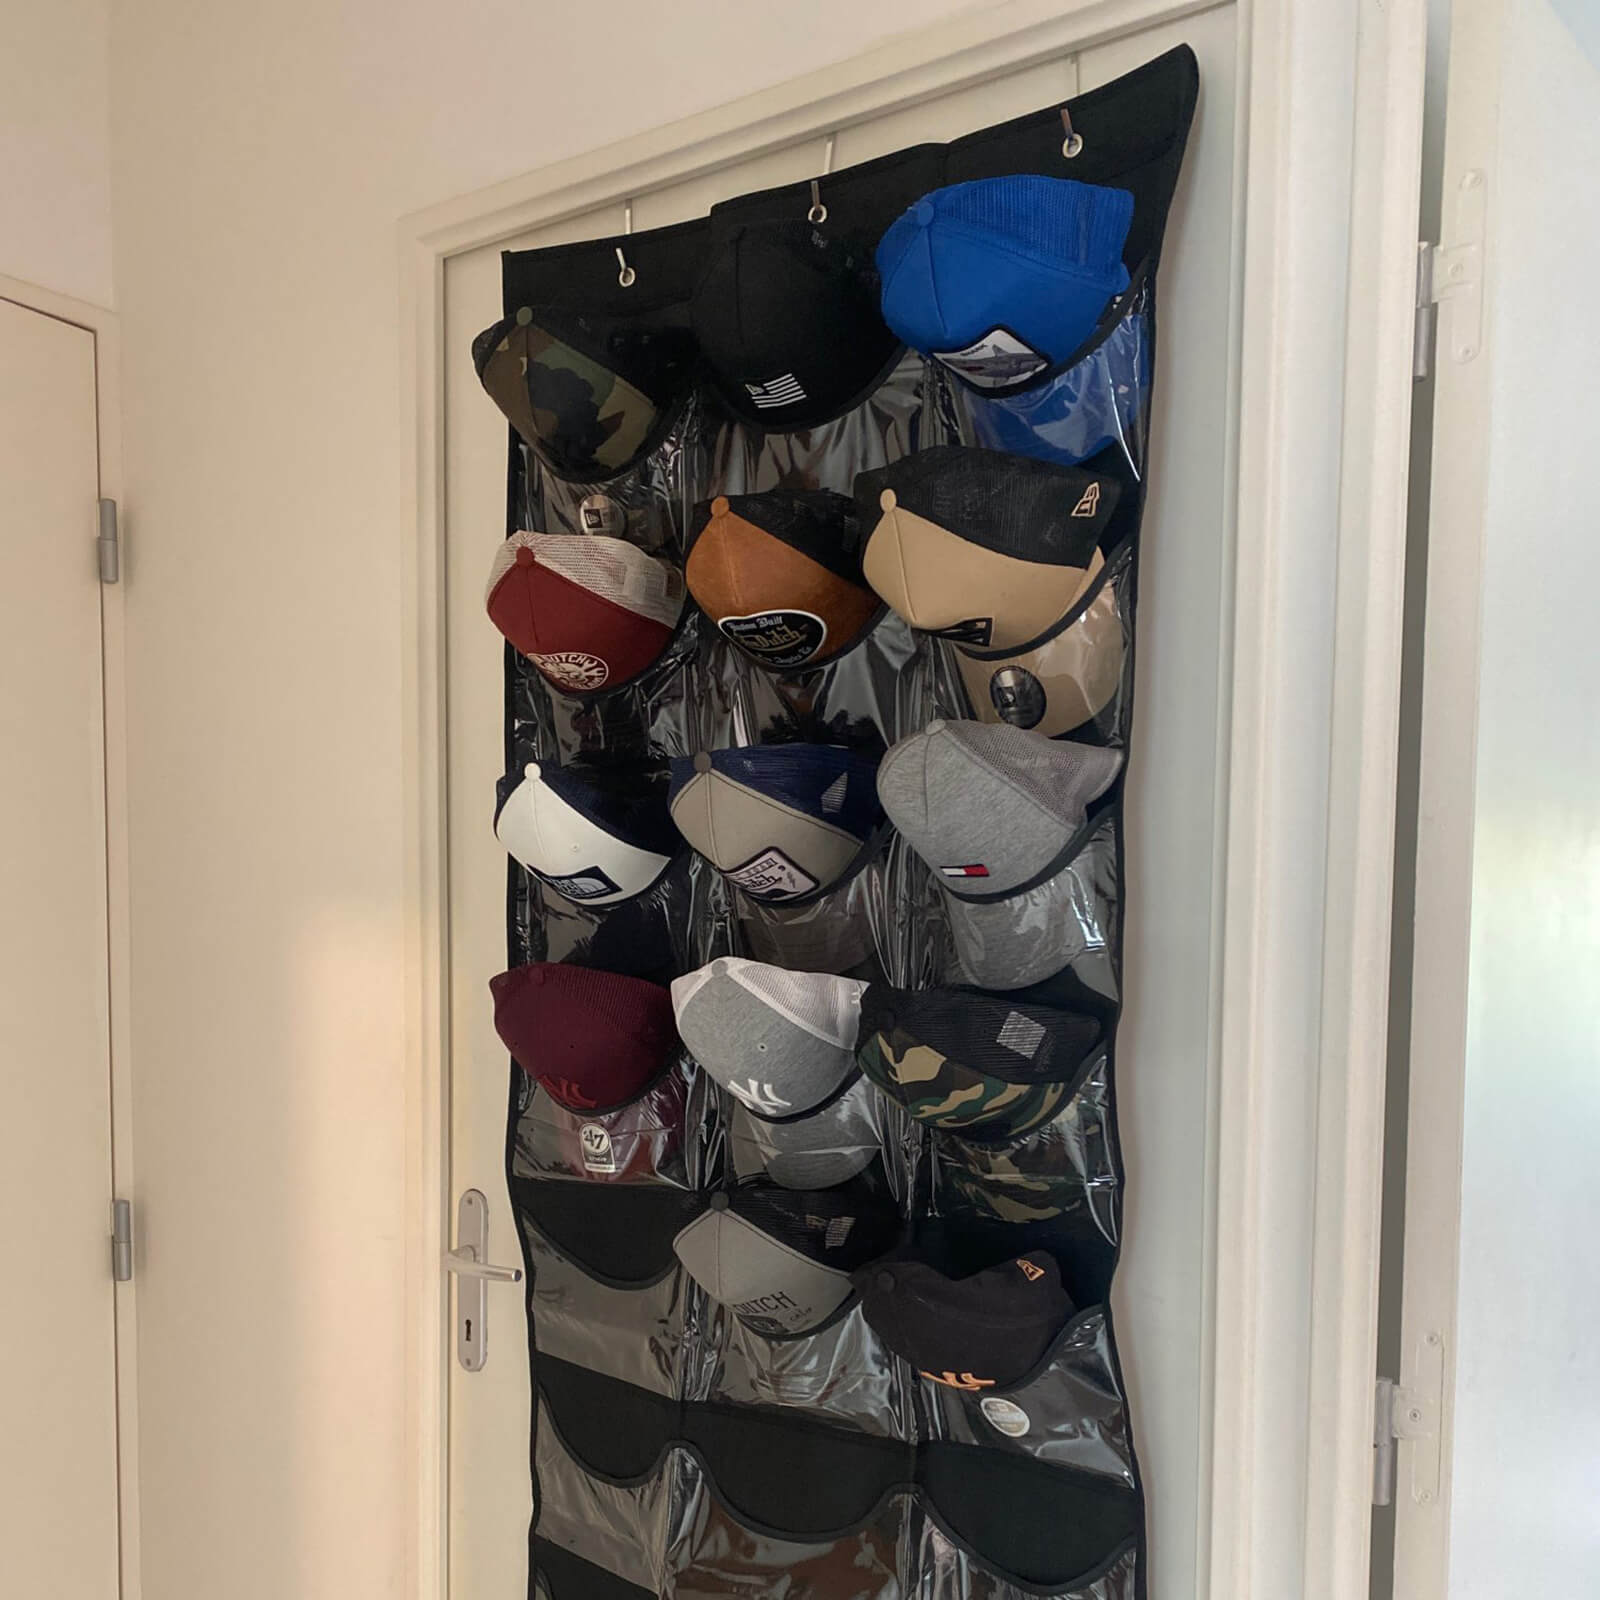 Baseball Cap Rack for Door with 24 Pockets - Hat Rack Store